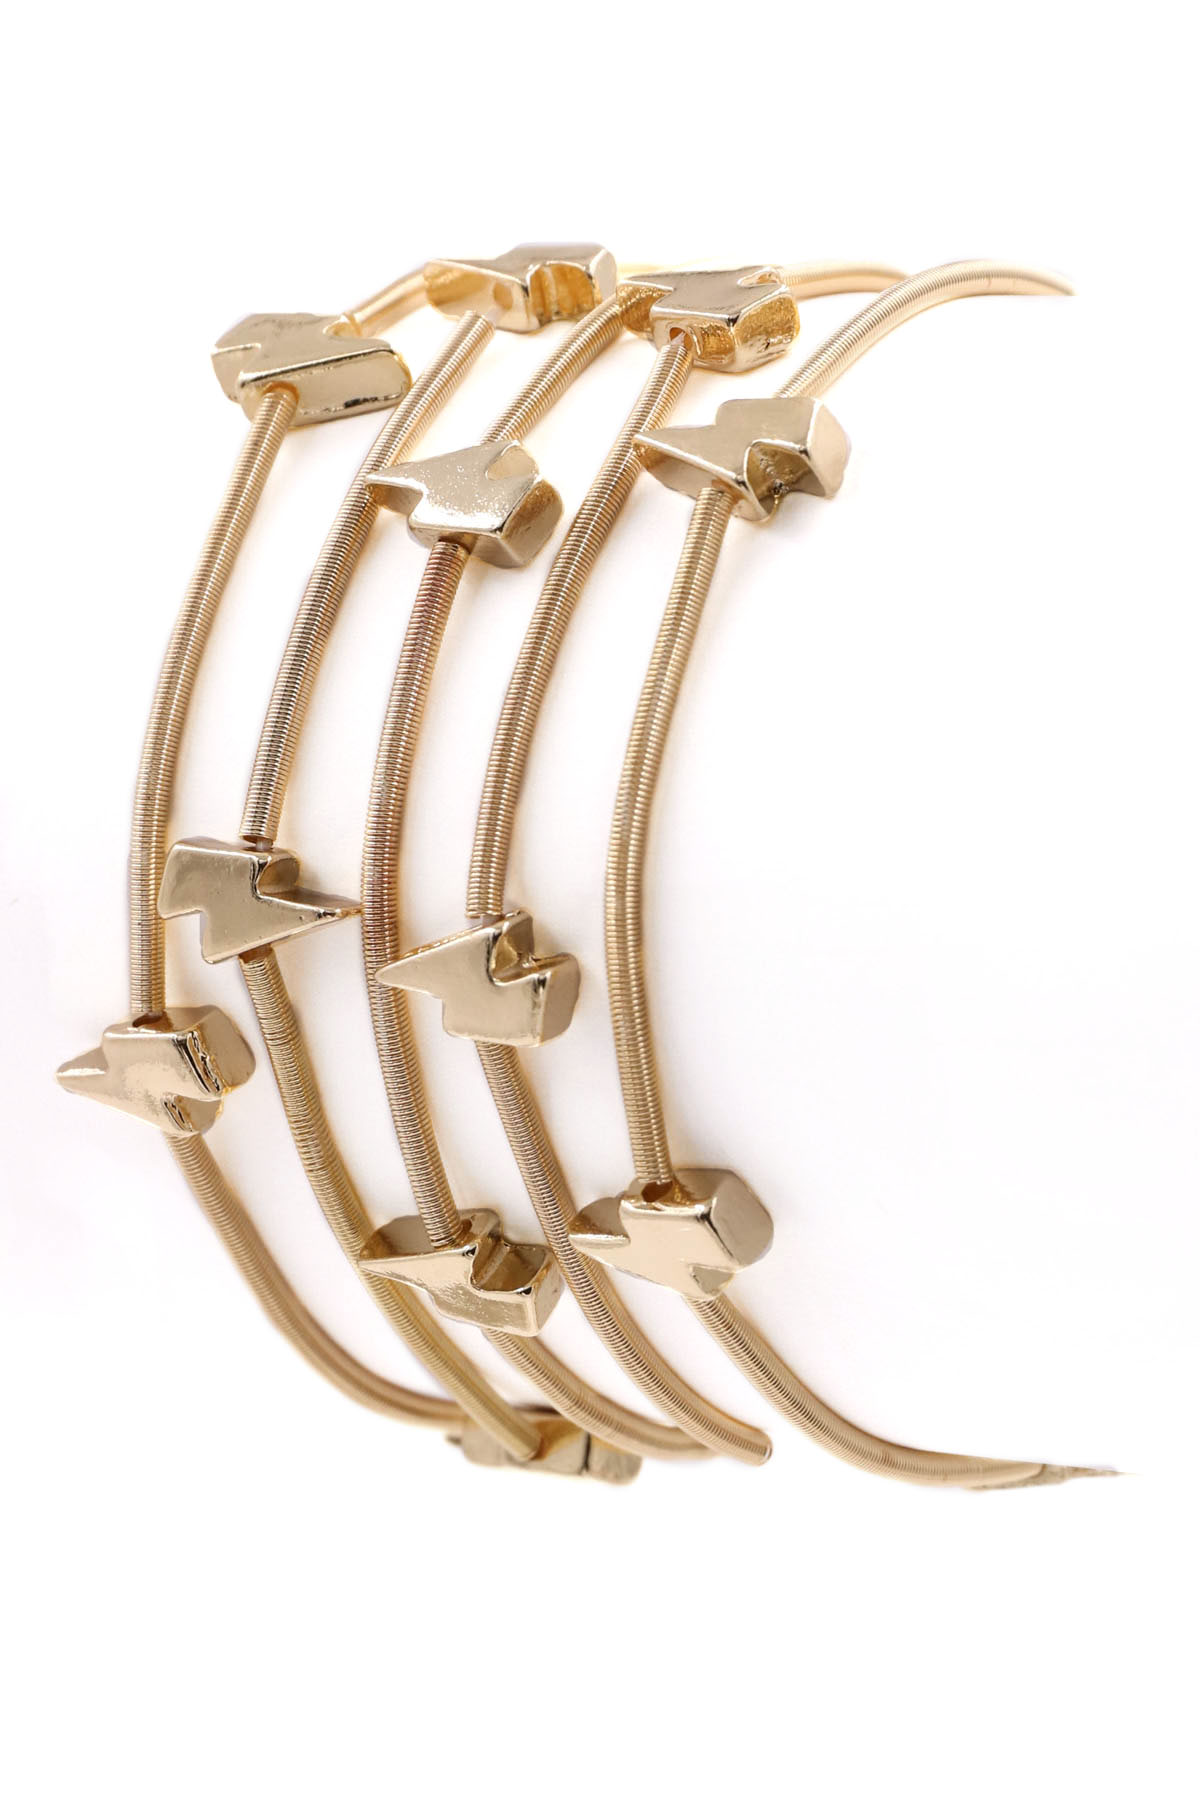 GOLD Lightning Bracelet Set - Bracelets